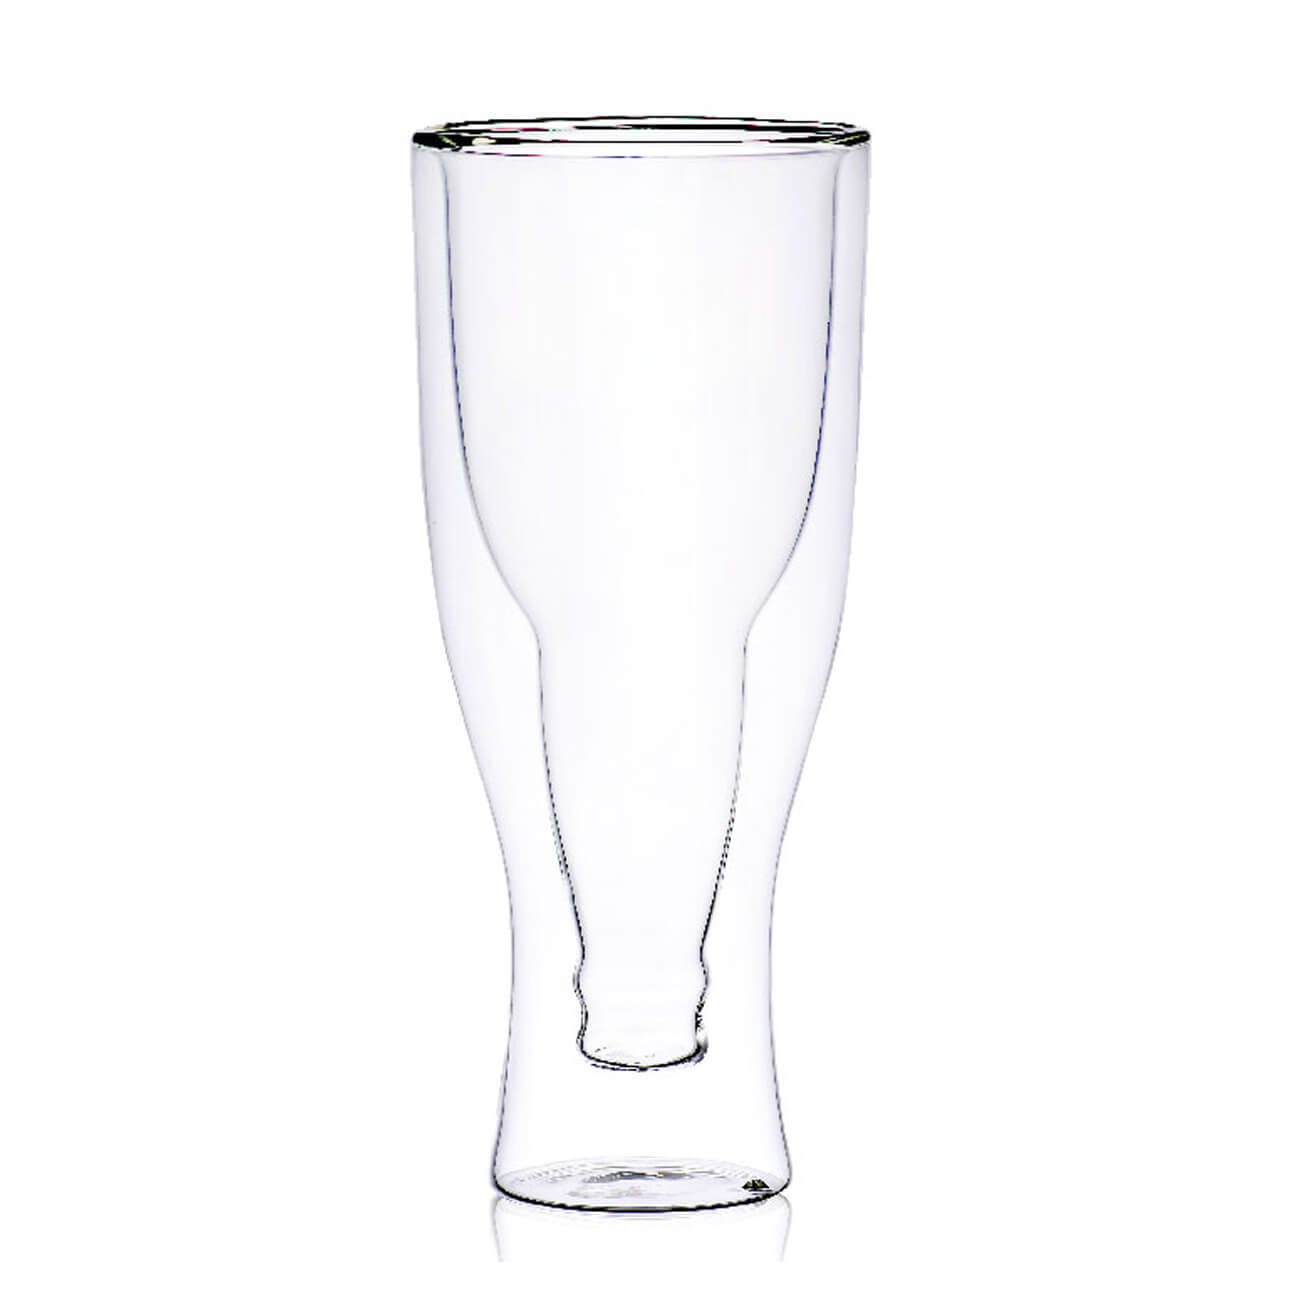 Стакан для пива, 430 мл, стекло Б, Бутылка, Air shape бутылка n3010500 0 6 л